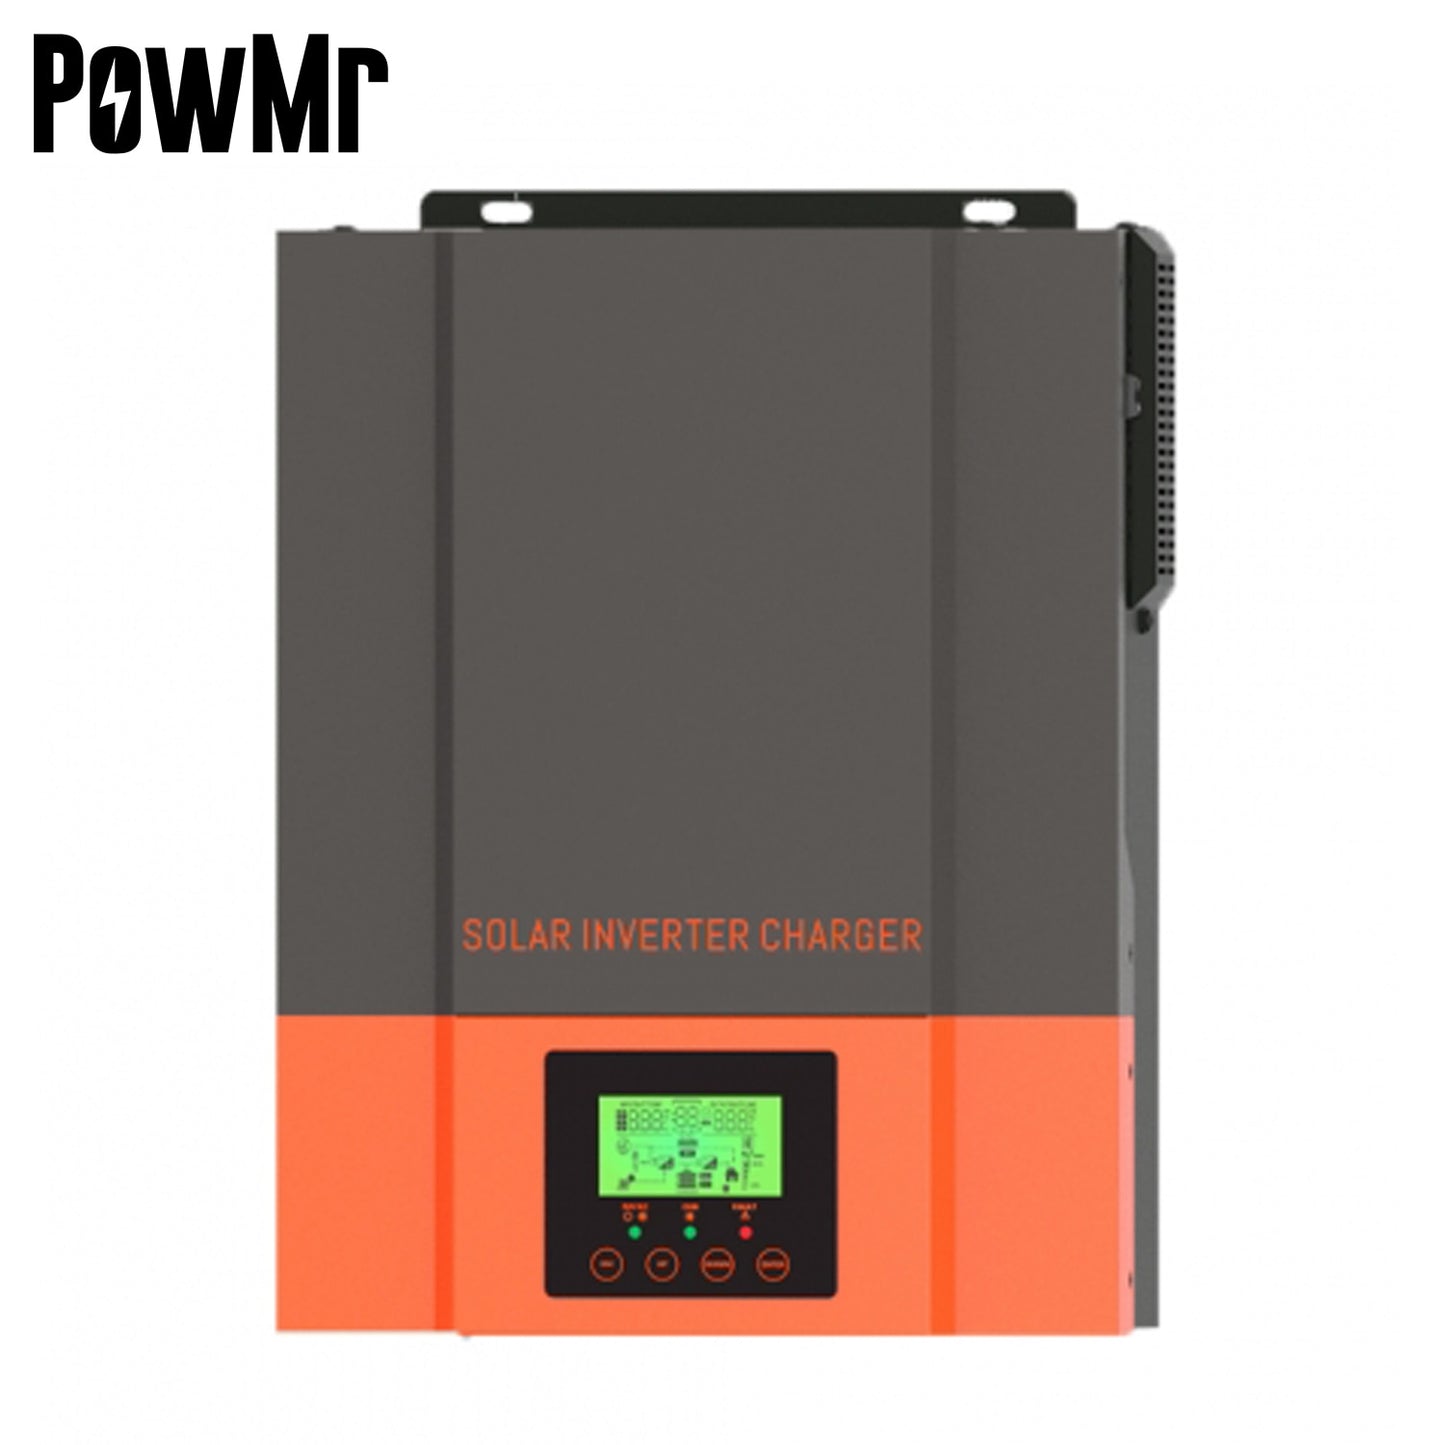 Inversor Solar Híbrido PowMr 1500W 12V 230V PV Max 450V Construído em 80A MPPT Controlador Solar Inversor de Onda Senoidal Pura 1.5KW